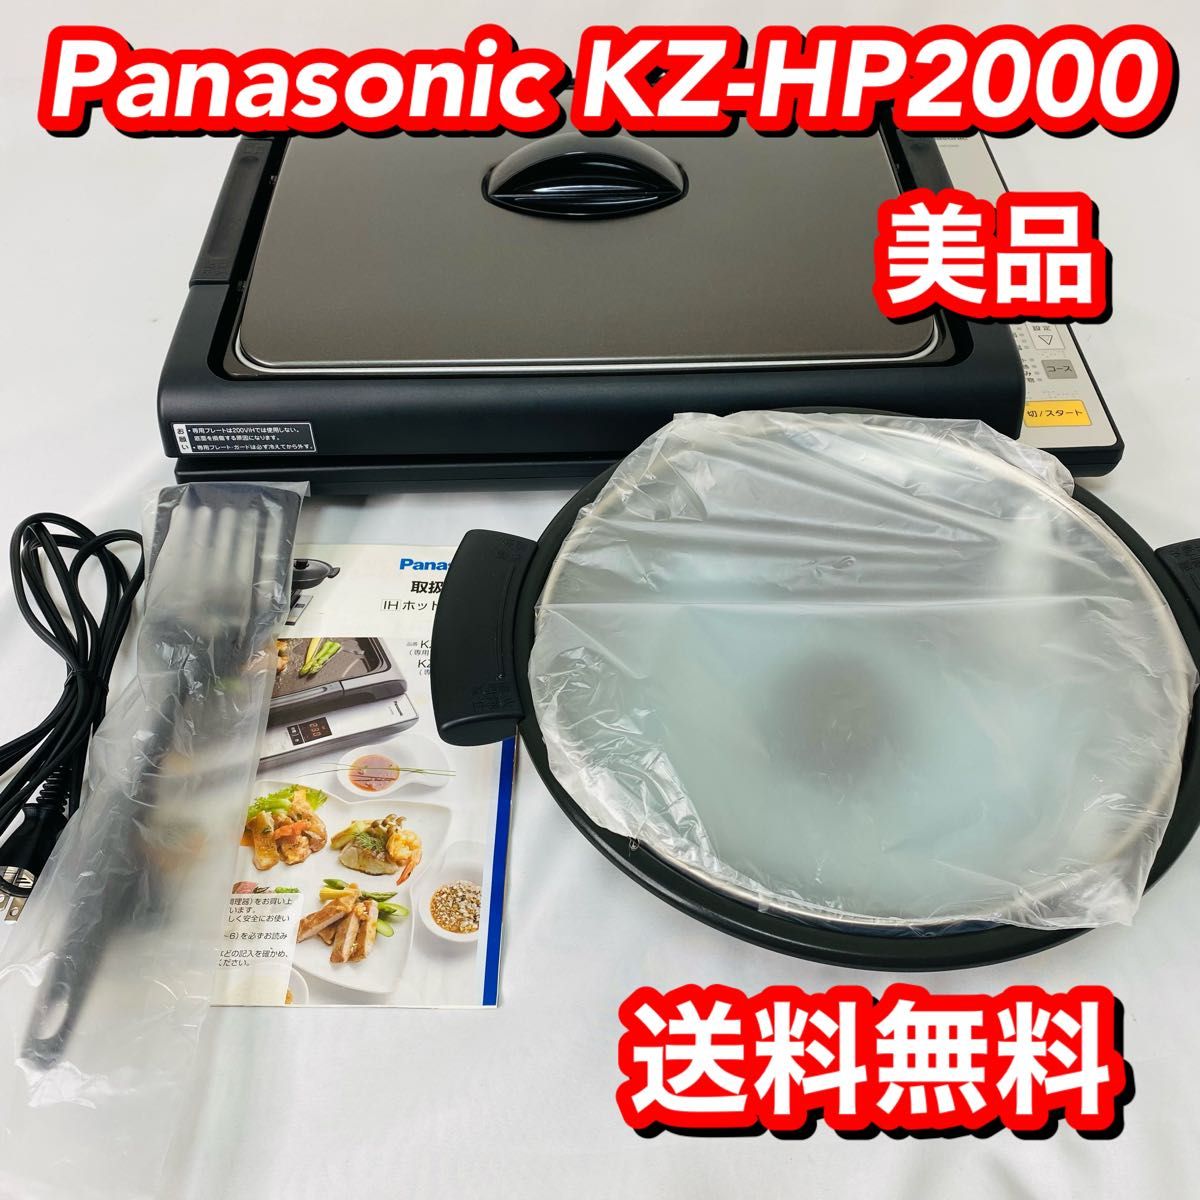 【美品】パナソニック Panasonic KZ-HP2000 IHホットプレート